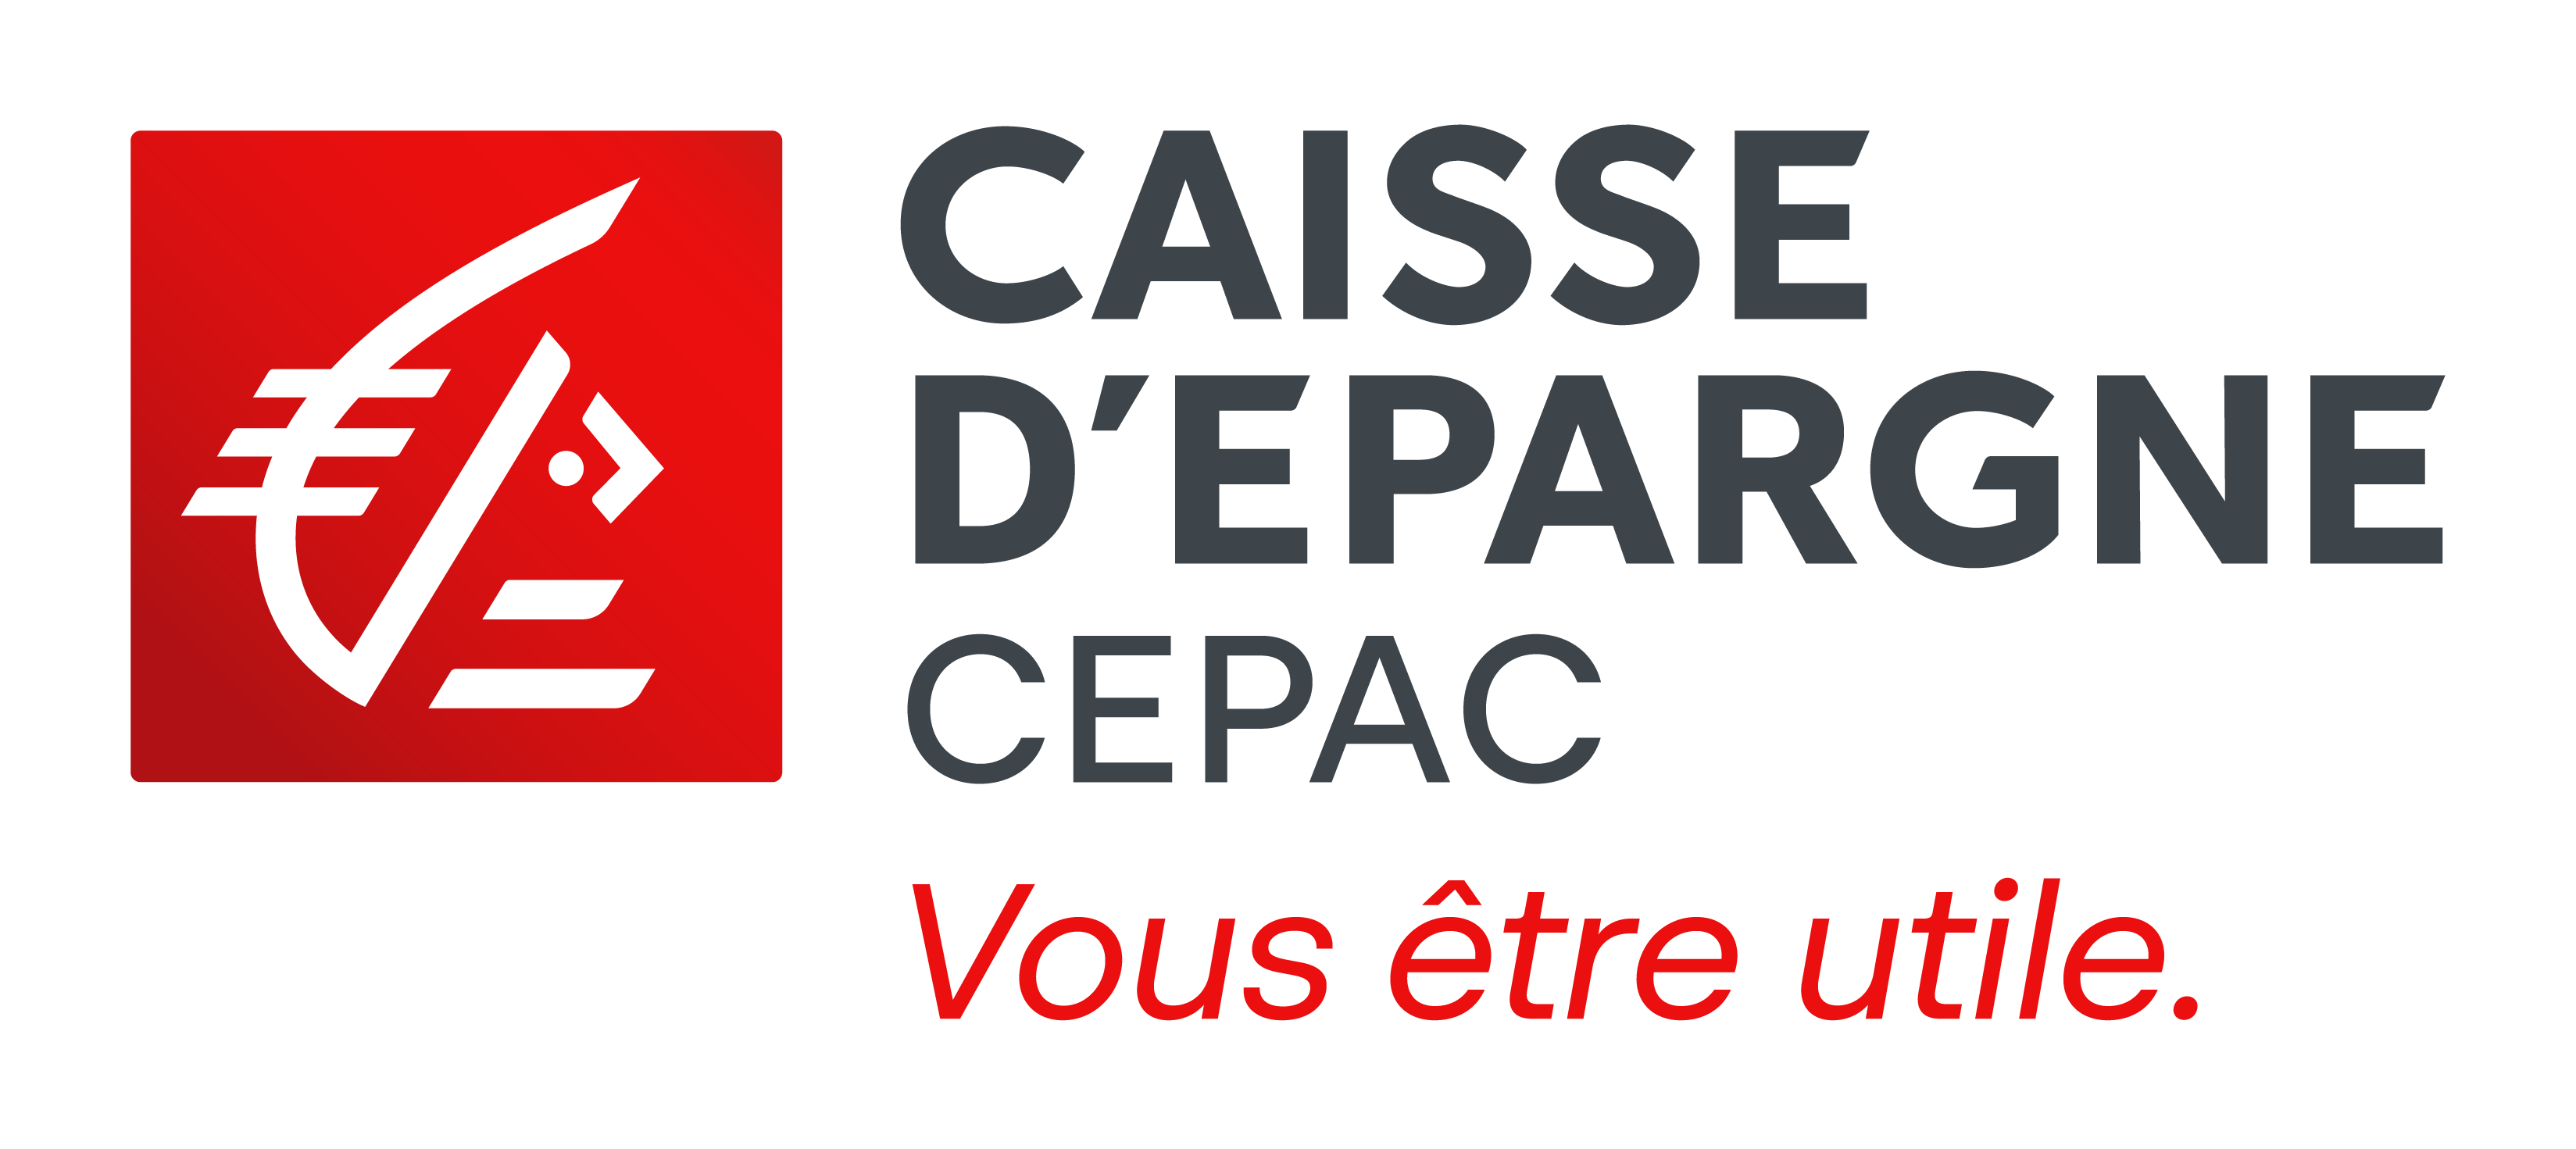 Caisse d’Epargne CEPAC